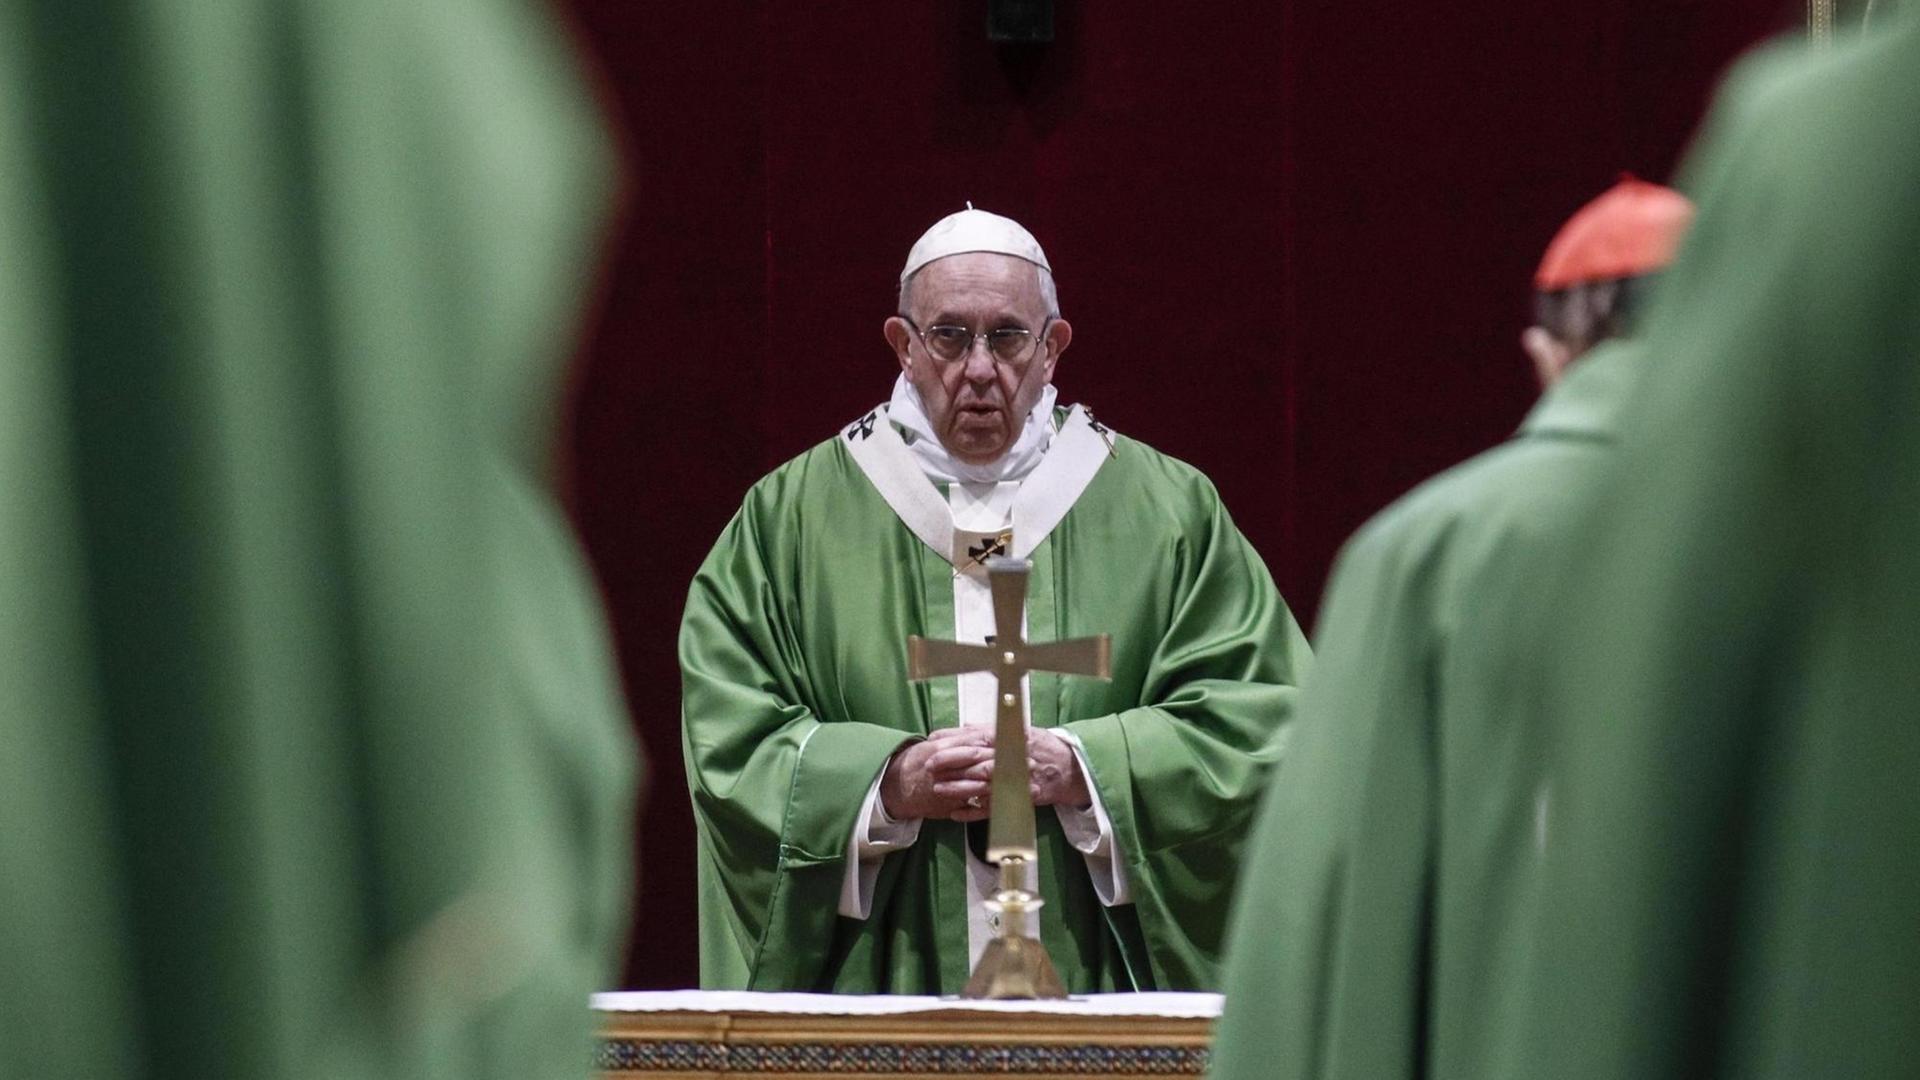 Der Papst feiert eine Messe zum Abschluss eines Treffens gegen Missbrauch in der Kirche.